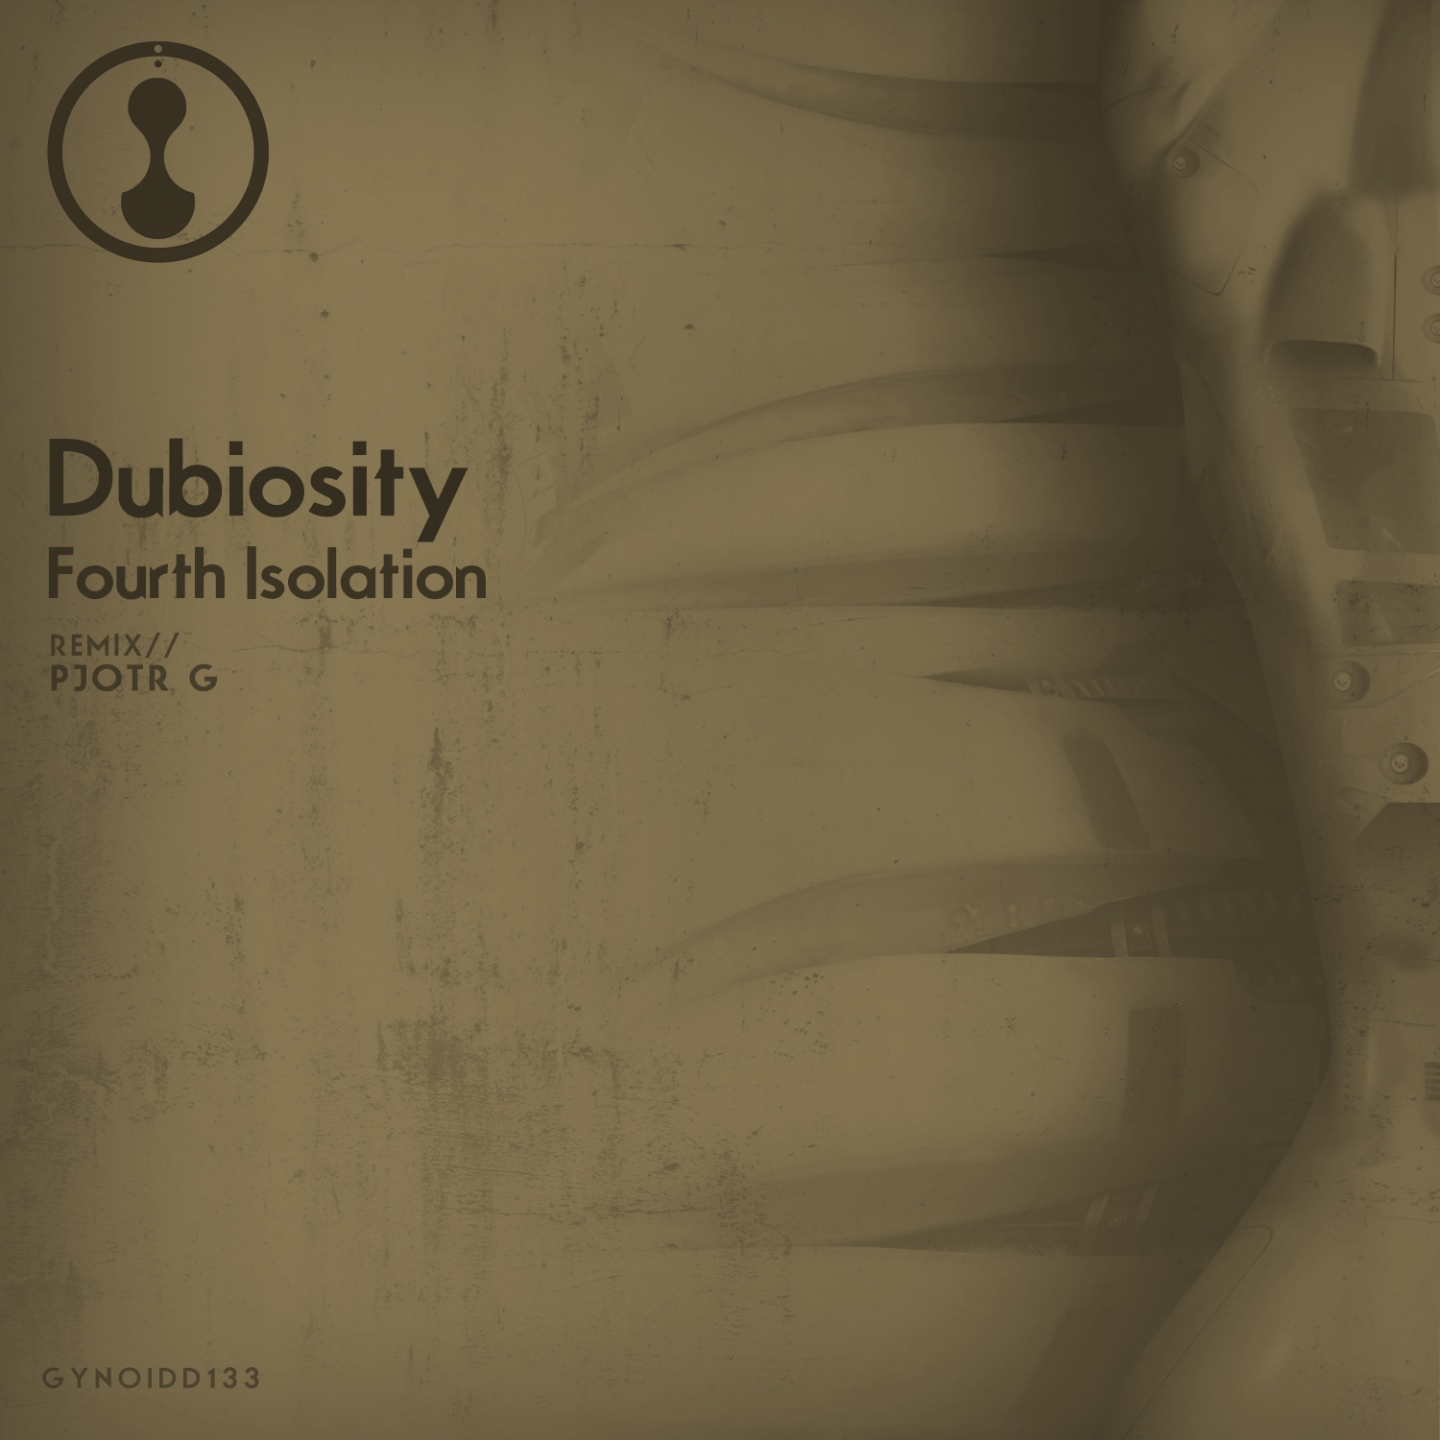 000-Dubiosity-Fourth Isolation- [GYNOIDD133]